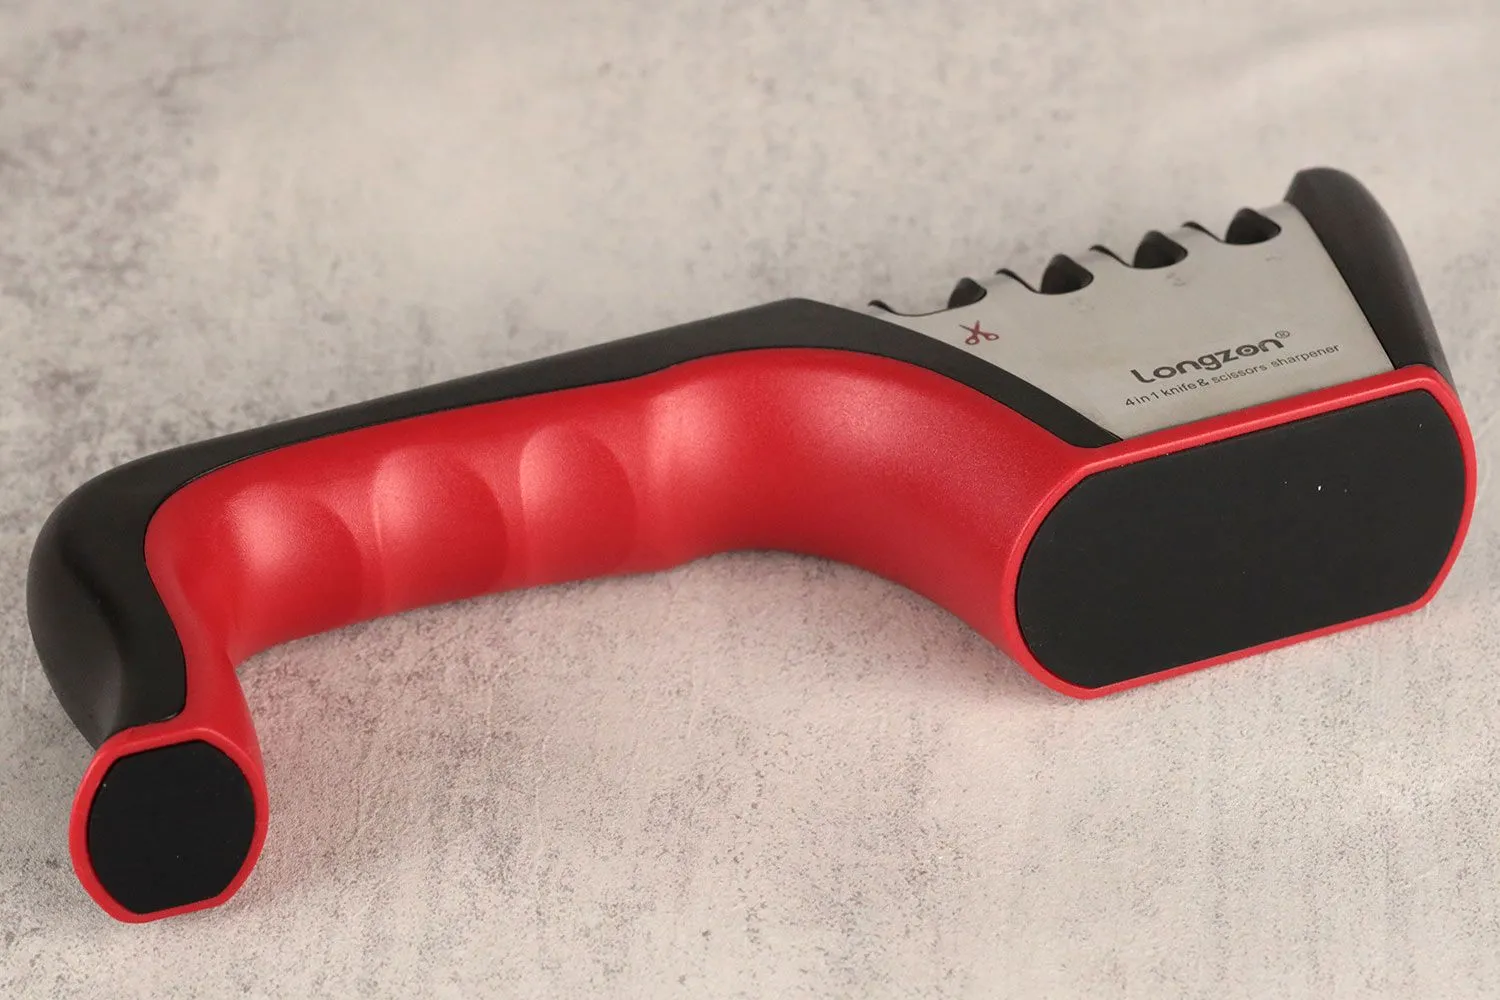 Knife Sharpener Longzon Scissors Kitchen 4 in 1